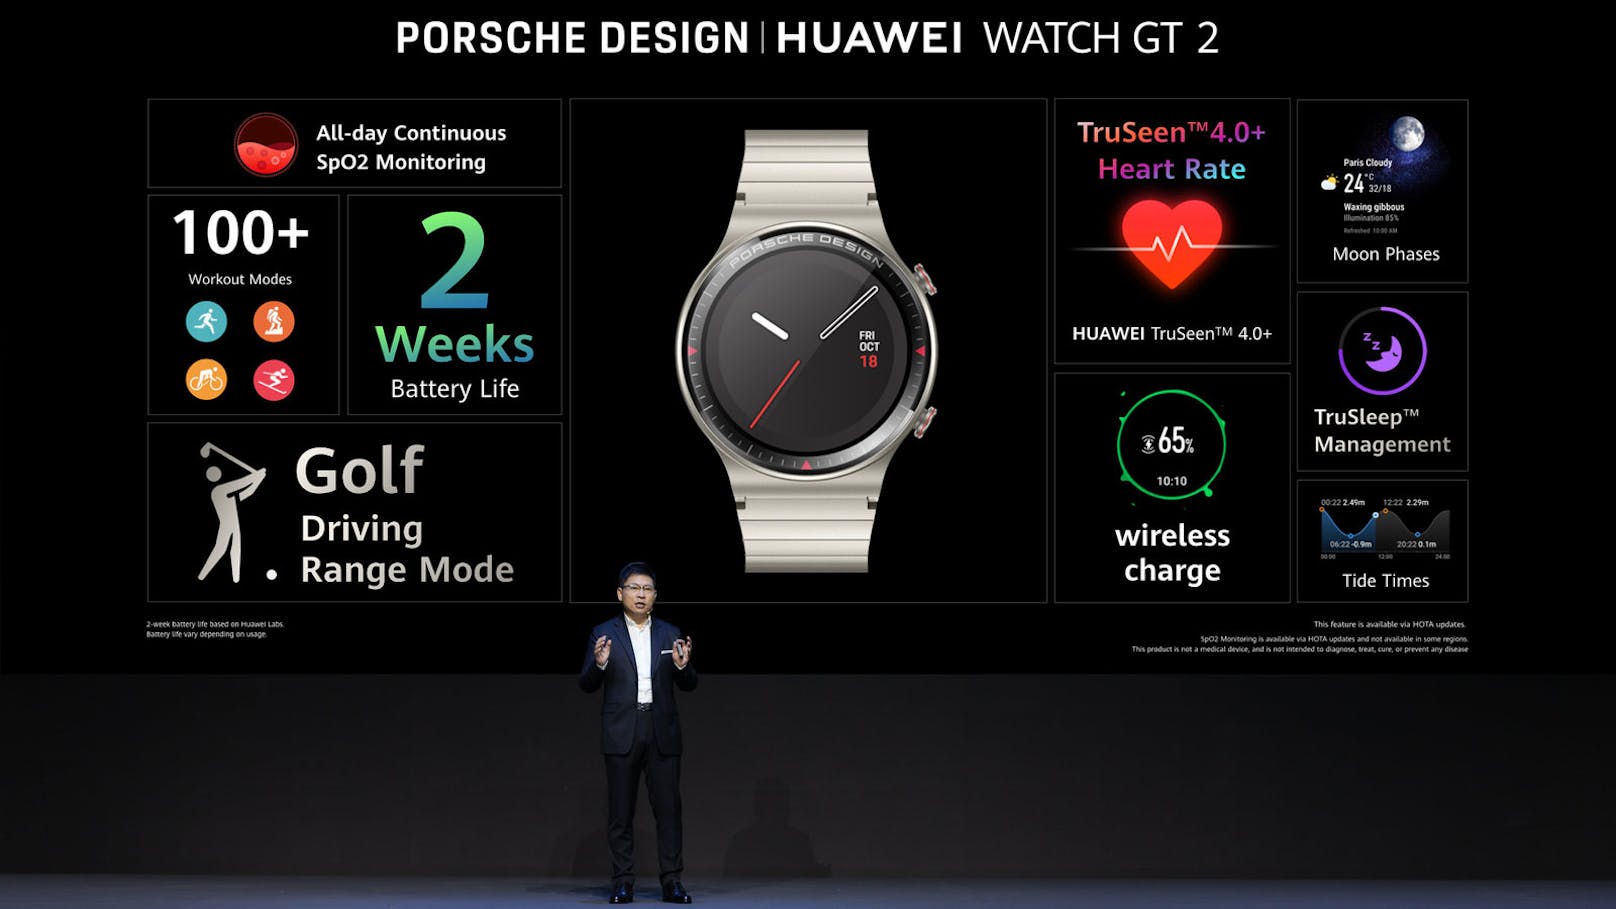 Die Porsche Design Huawei Watch GT 2